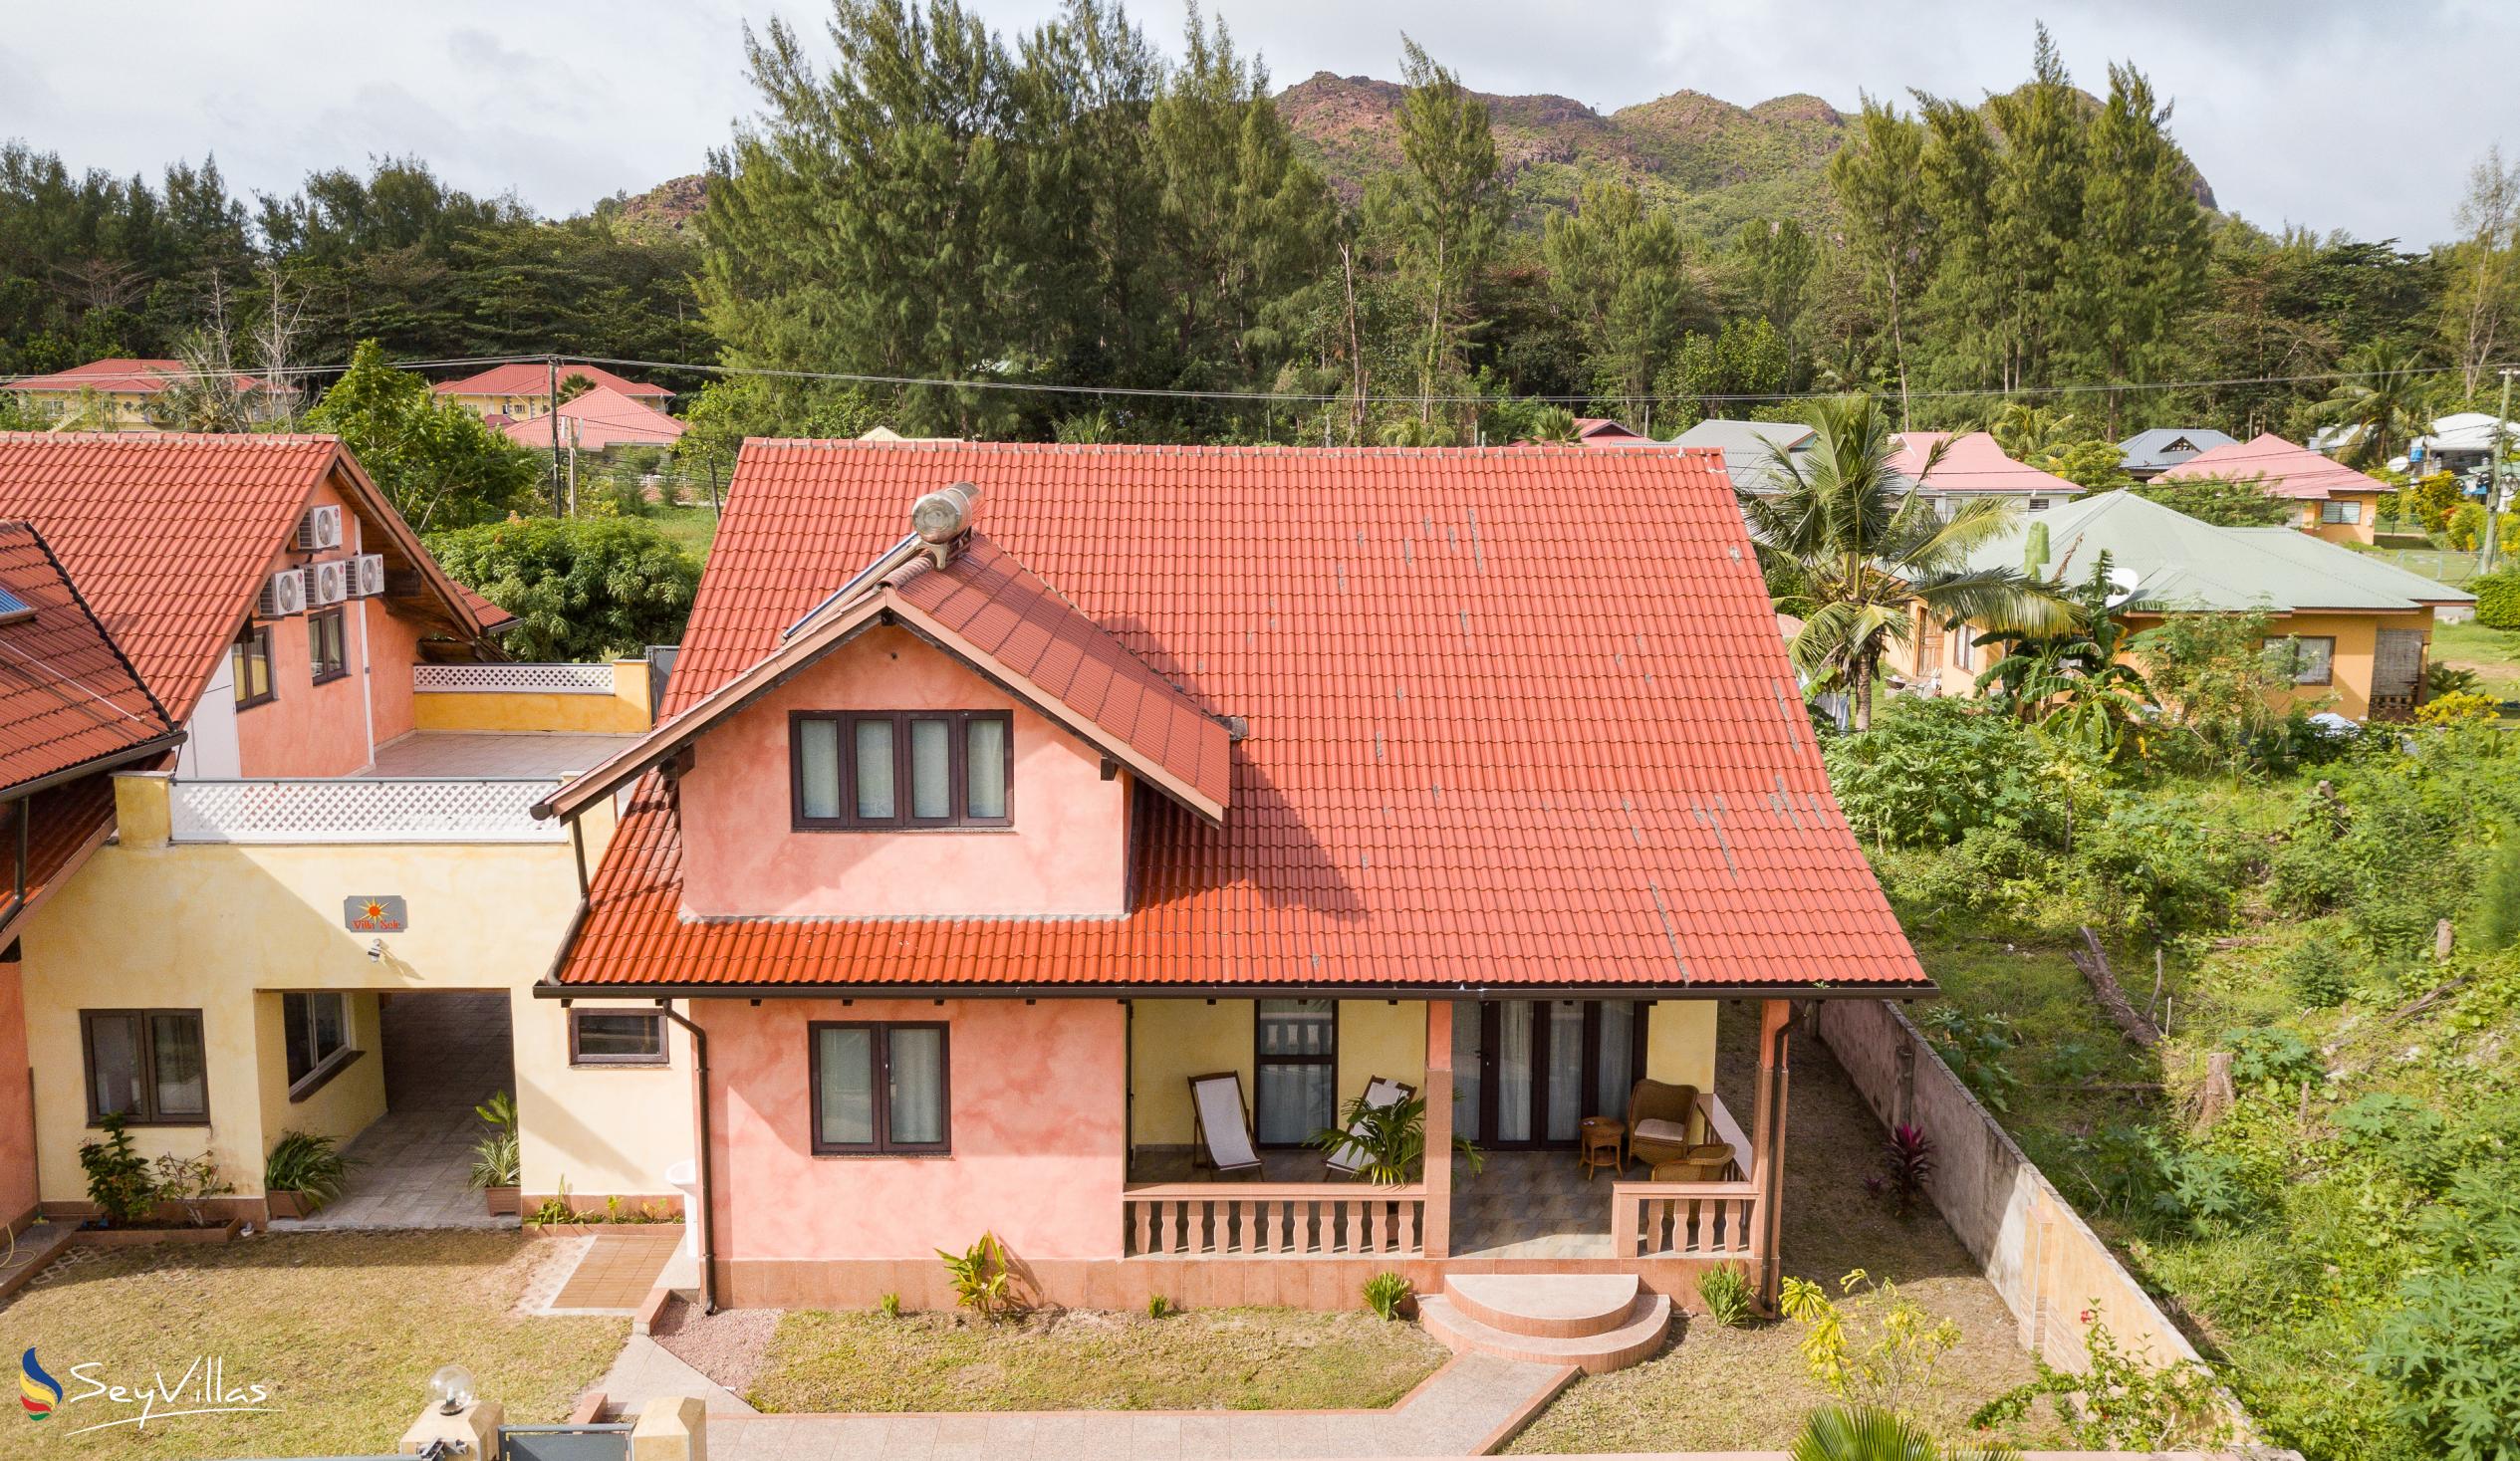 Foto 5: Villa Sole - Esterno - Praslin (Seychelles)